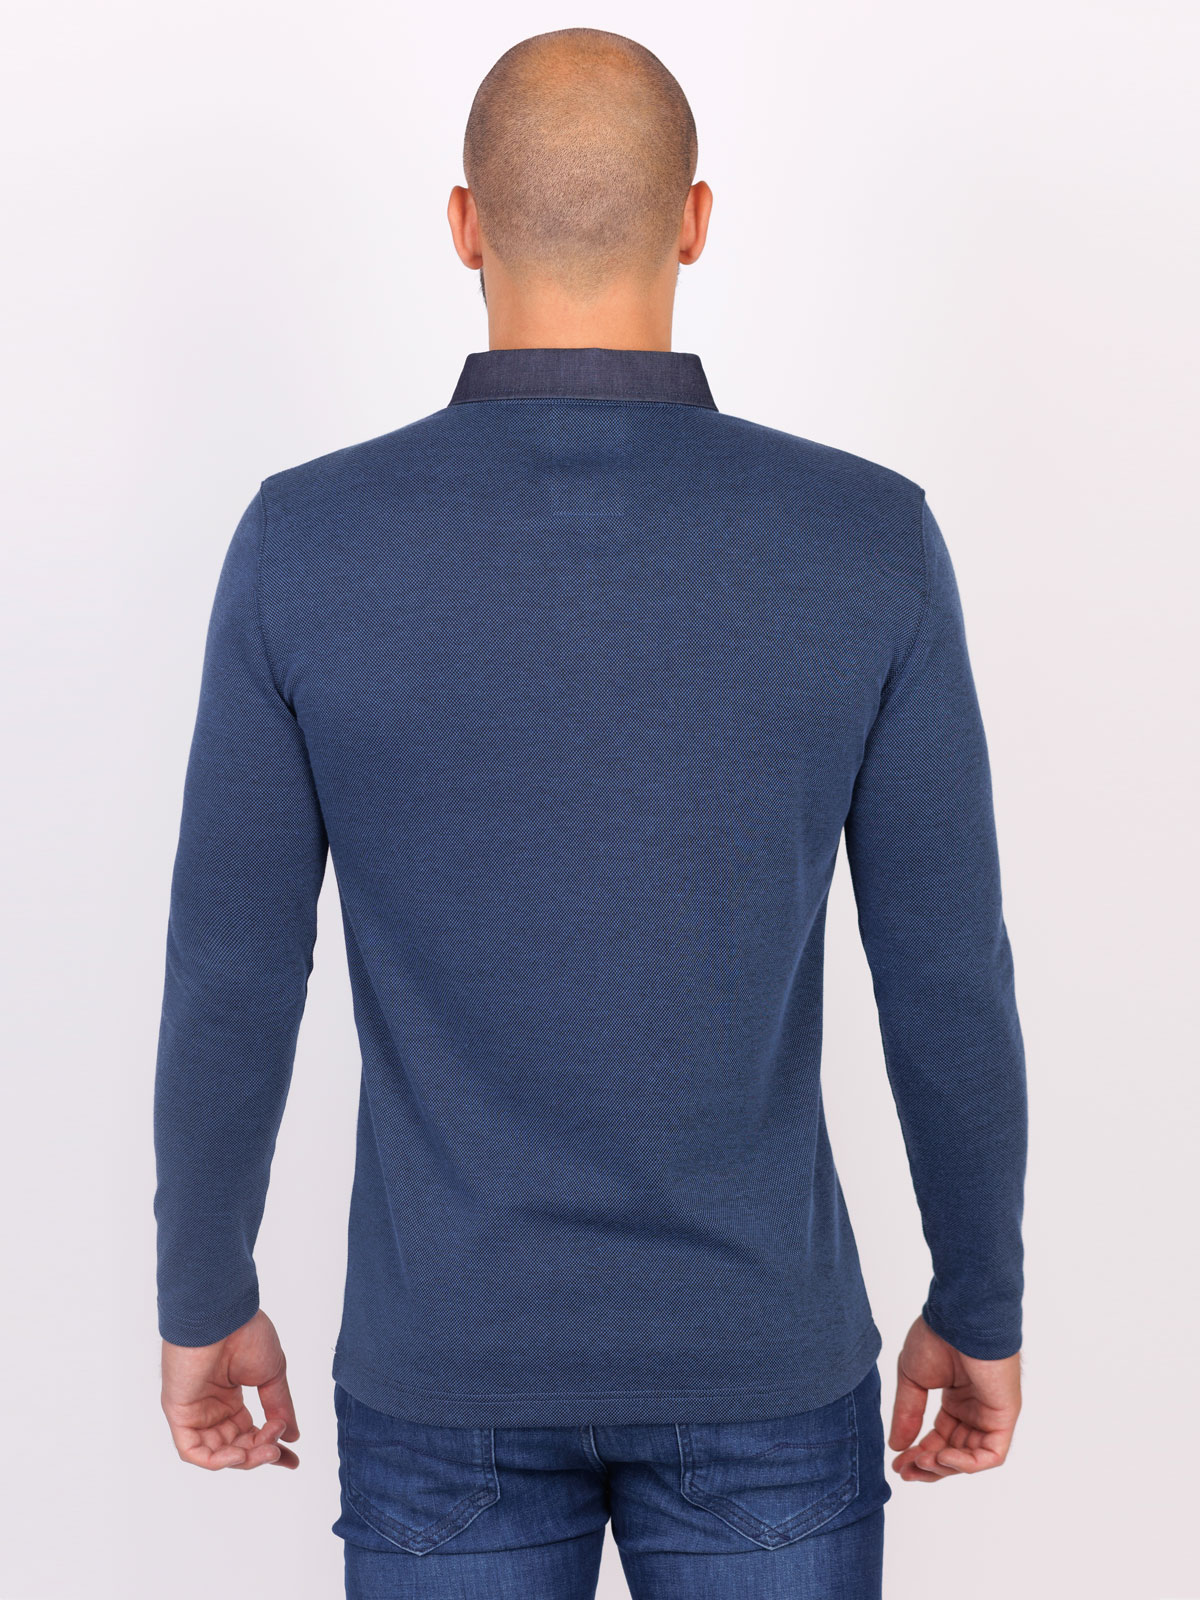 Ανδρική τζιν μπλούζα με ραμμένο γιακά - 18274 € 35.43 img2